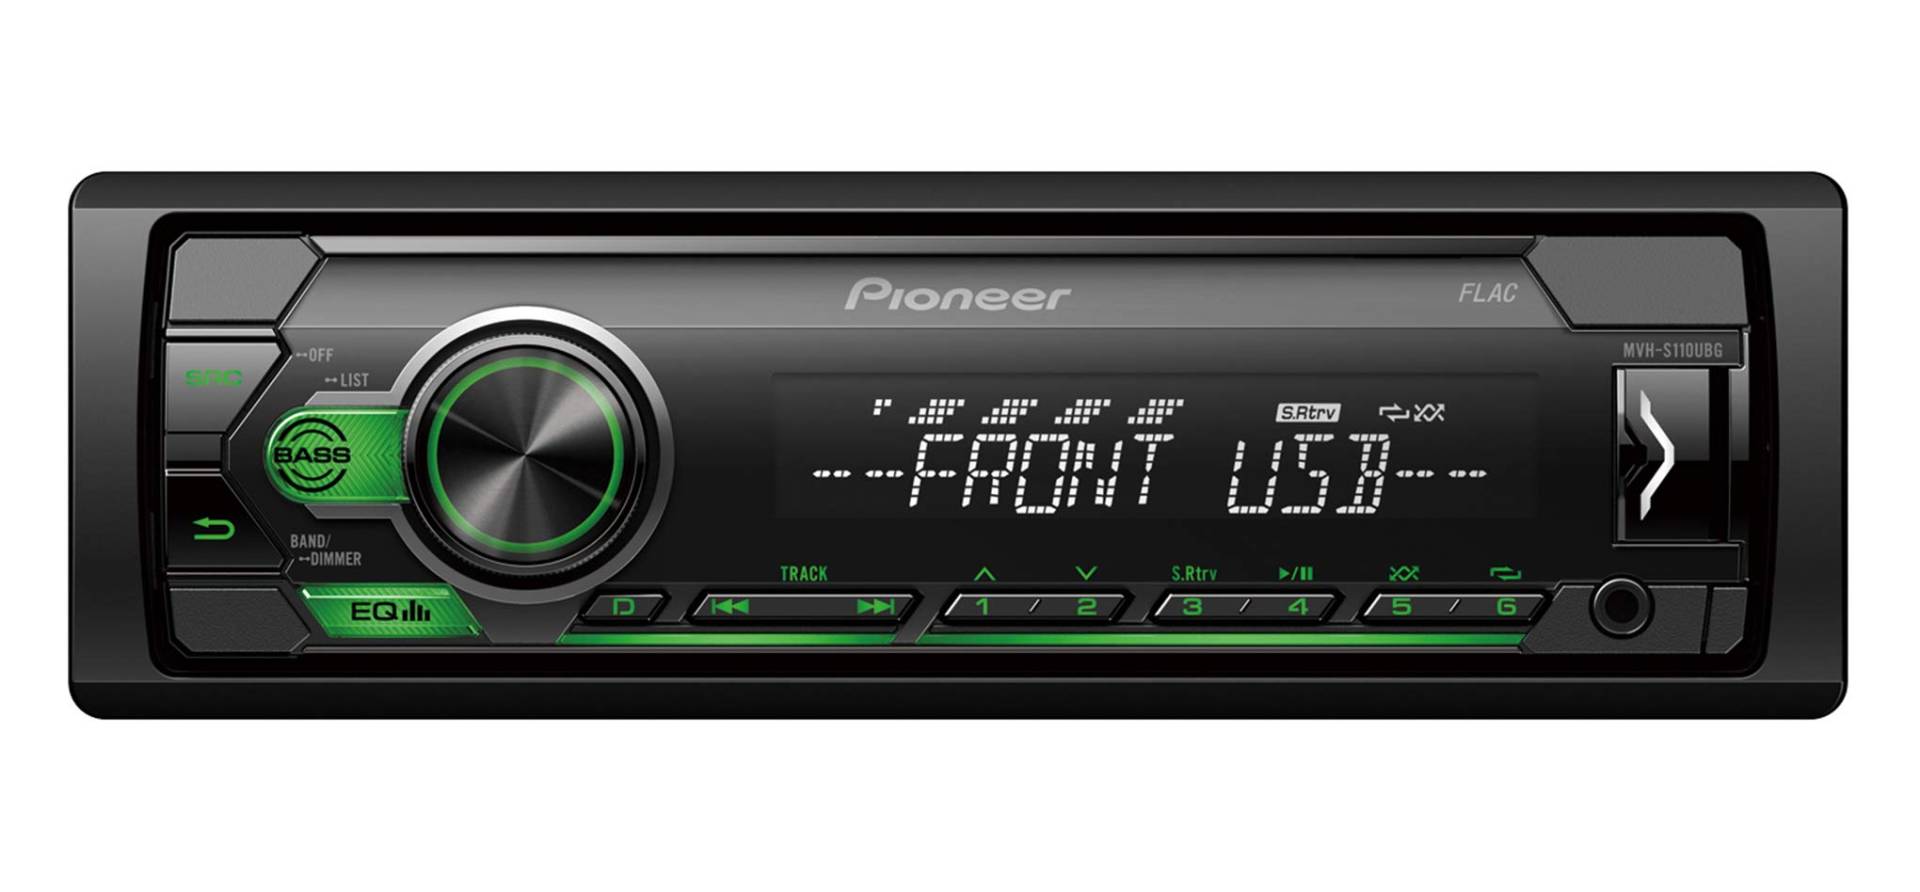 Pioneer MVH-S110UBG | 1DIN Autoradio mit RDS | grün | halbe Einbautiefe | 4x50Watt | USB | MP3 | AUX-Eingang | Android-Unterstützung | 5-Band Equalizer | ARC App von Pioneer